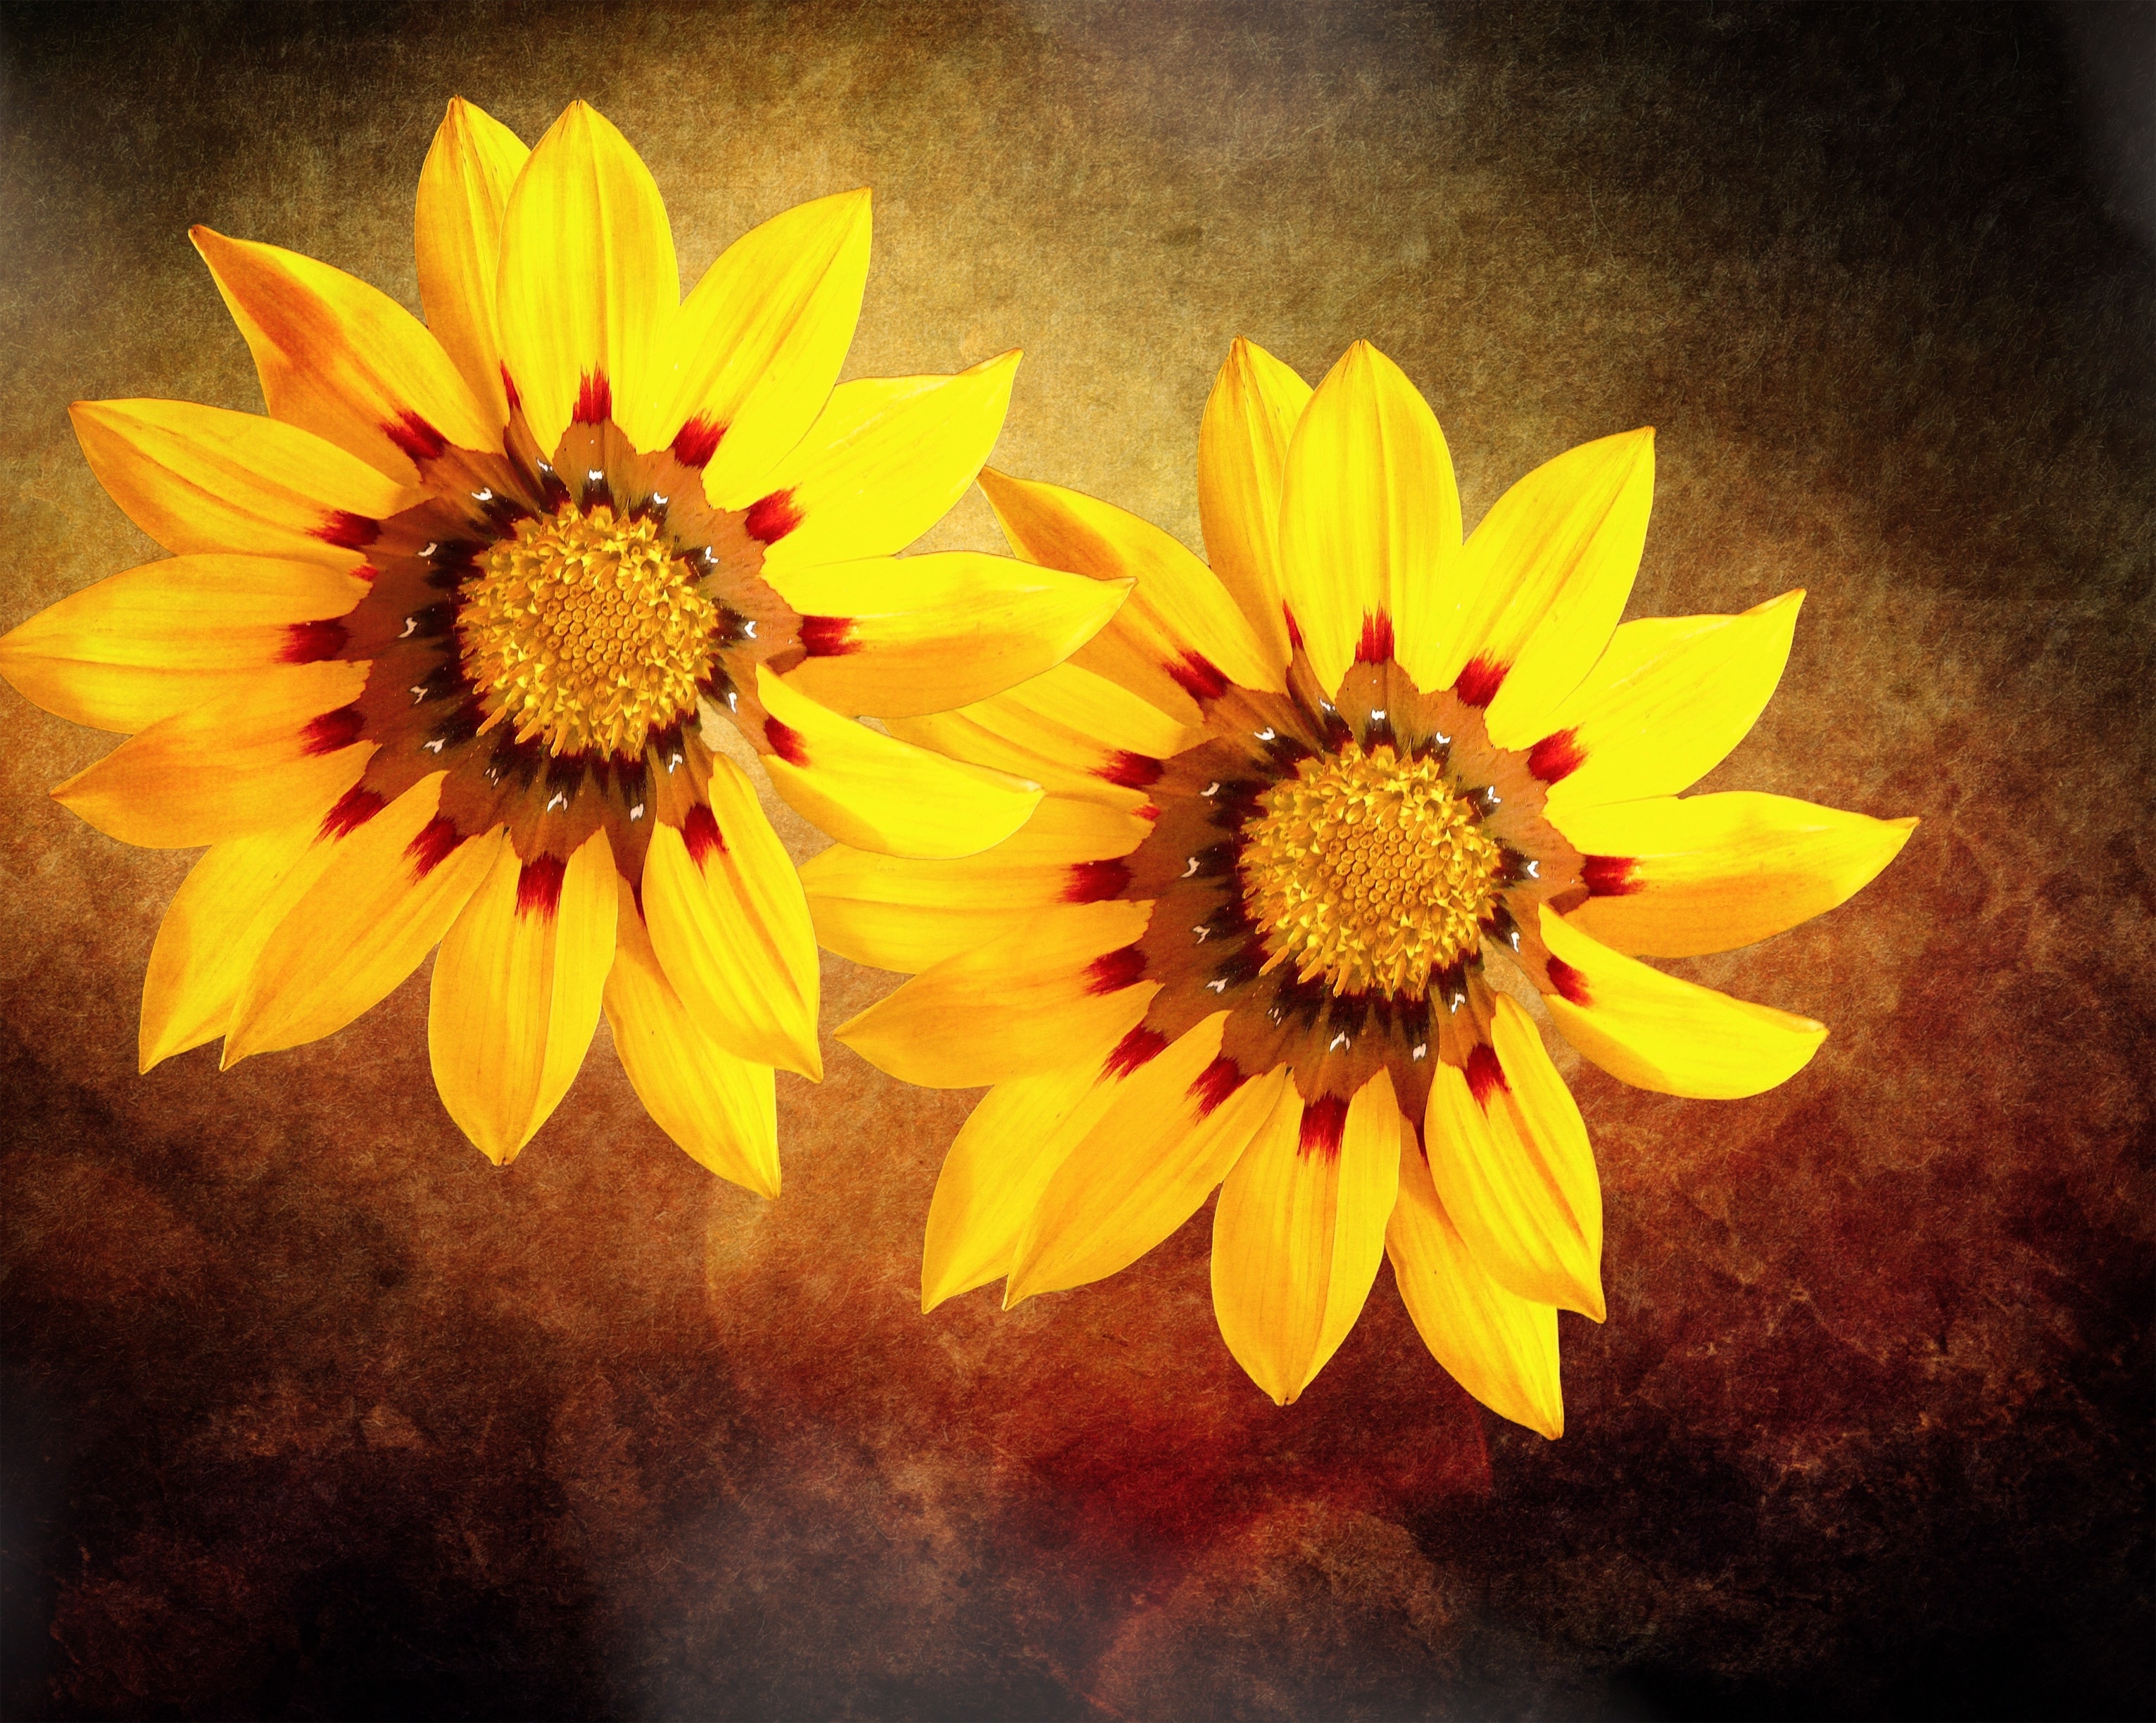 2 yellow sunflowers